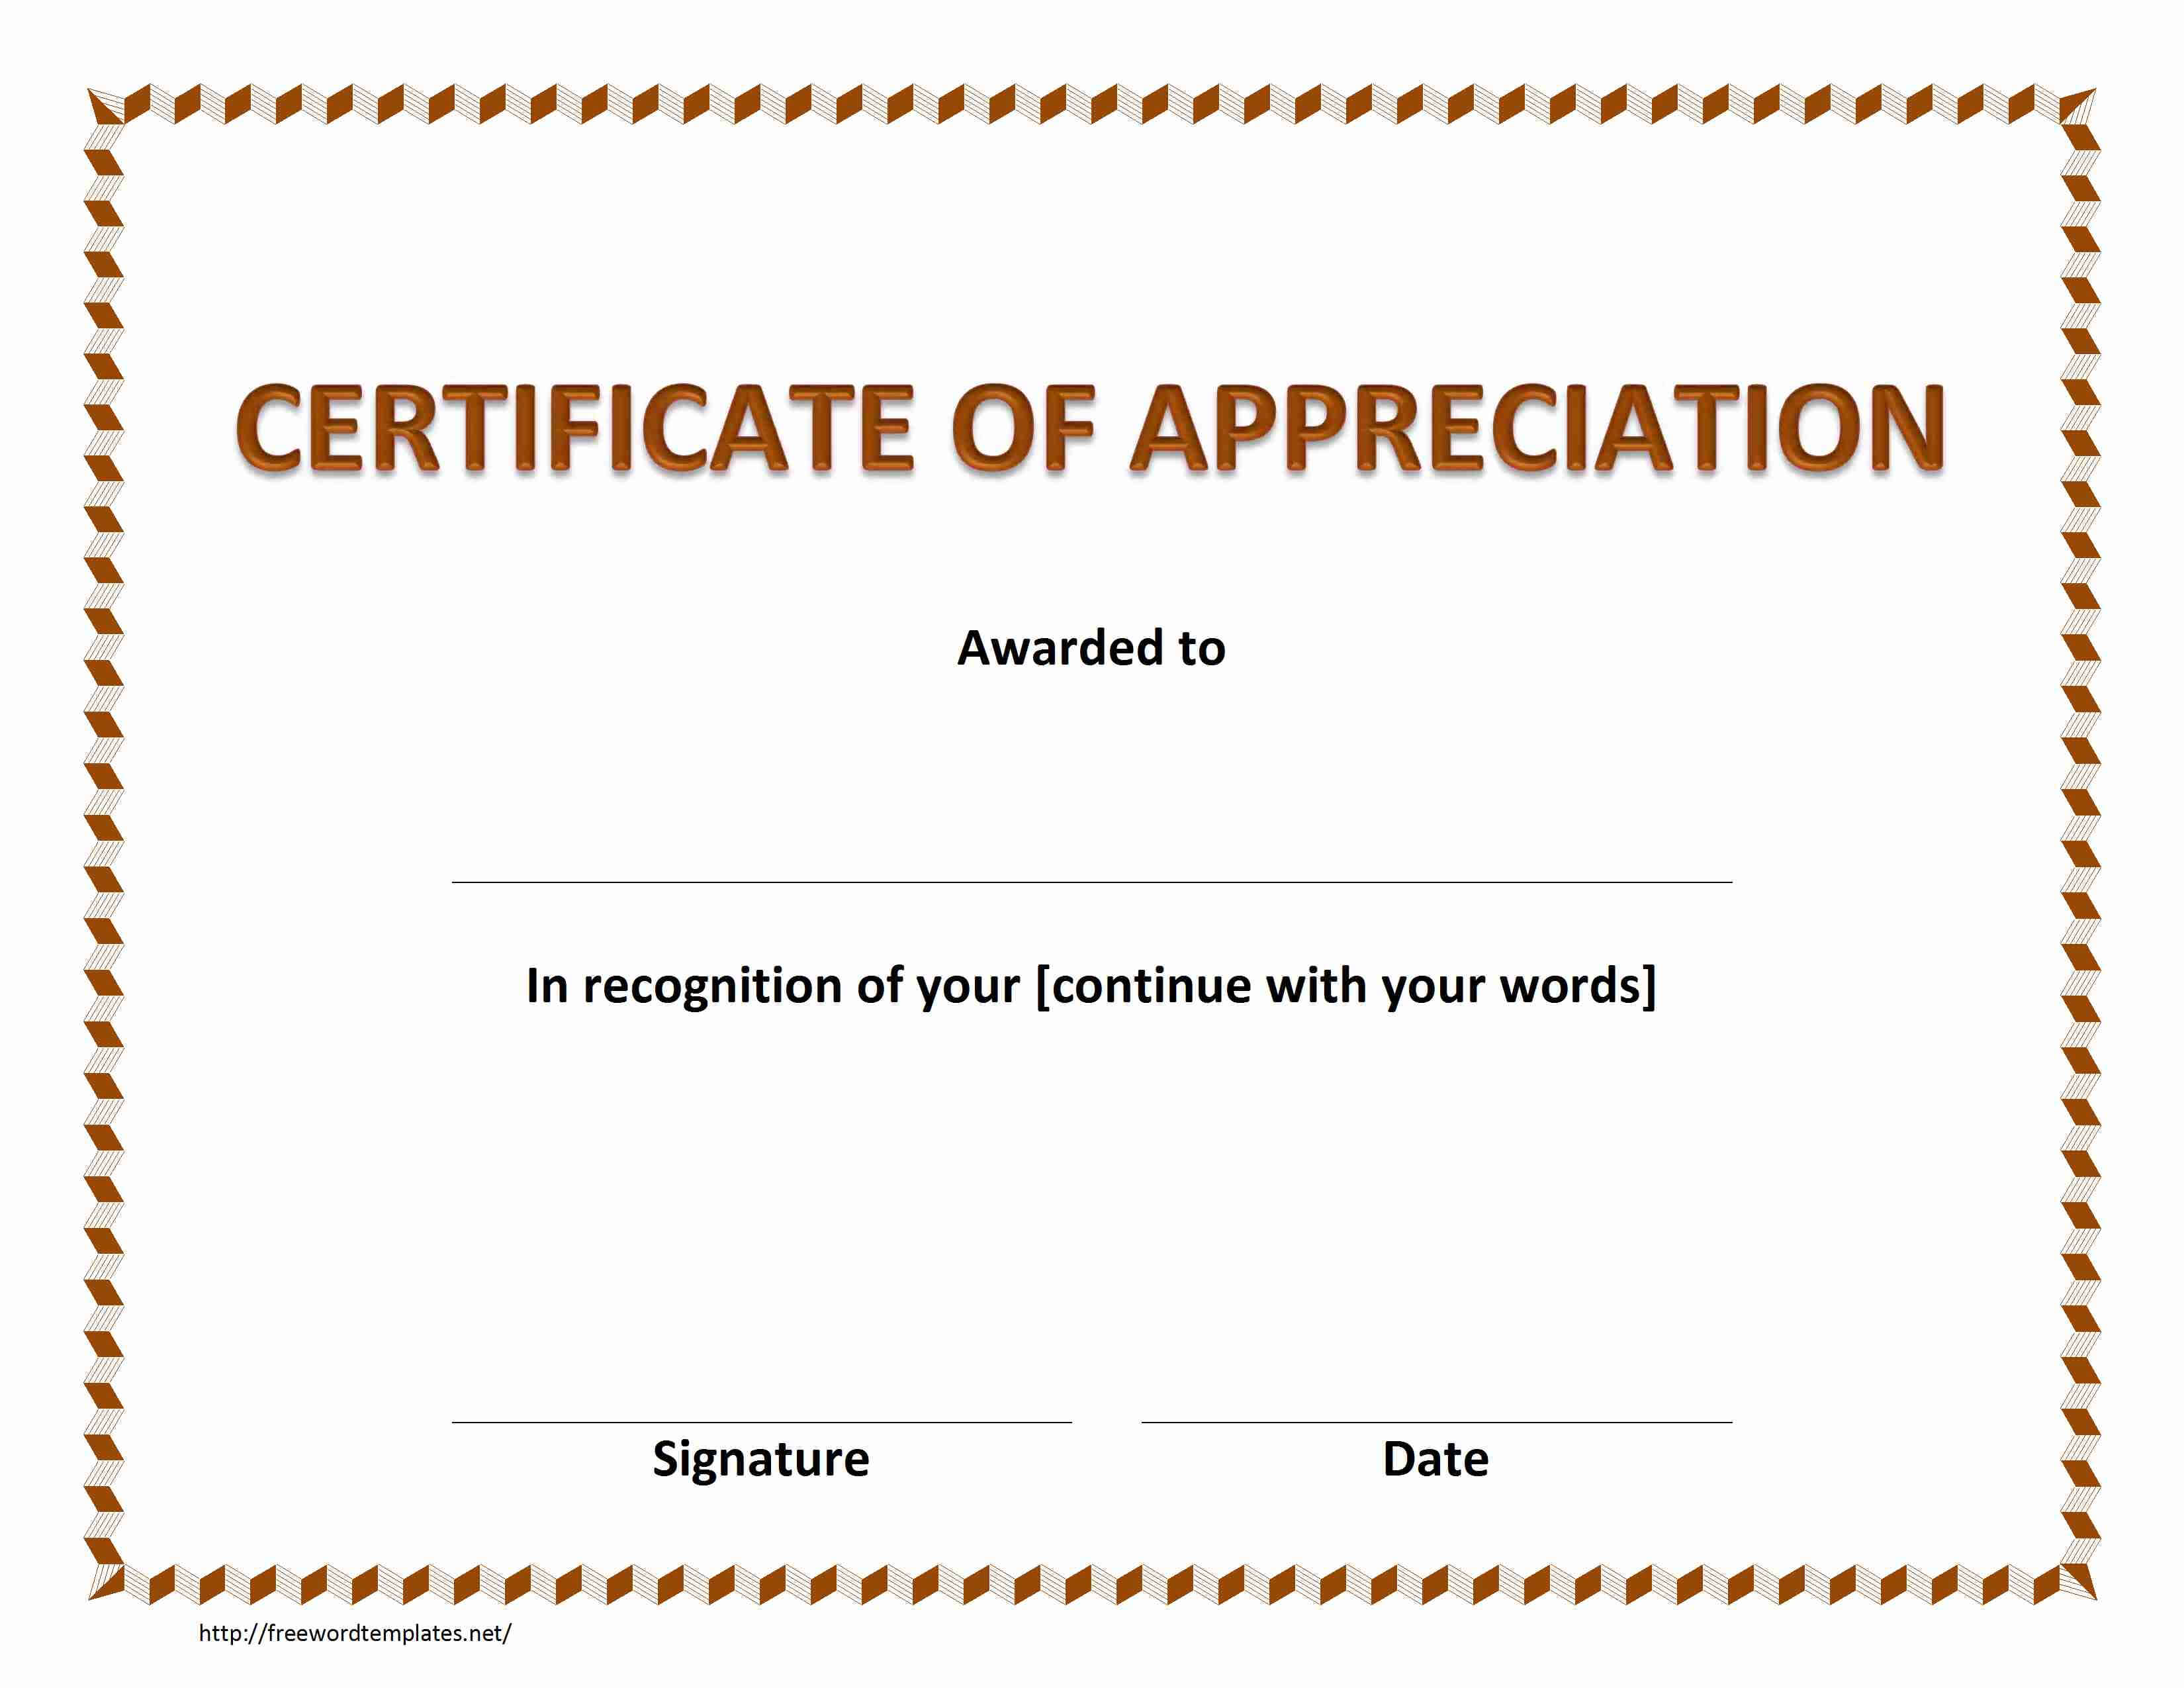 Certificate Of Appreciation In Certificate Appreciation Inside Template For Certificate Of Appreciation In Microsoft Word